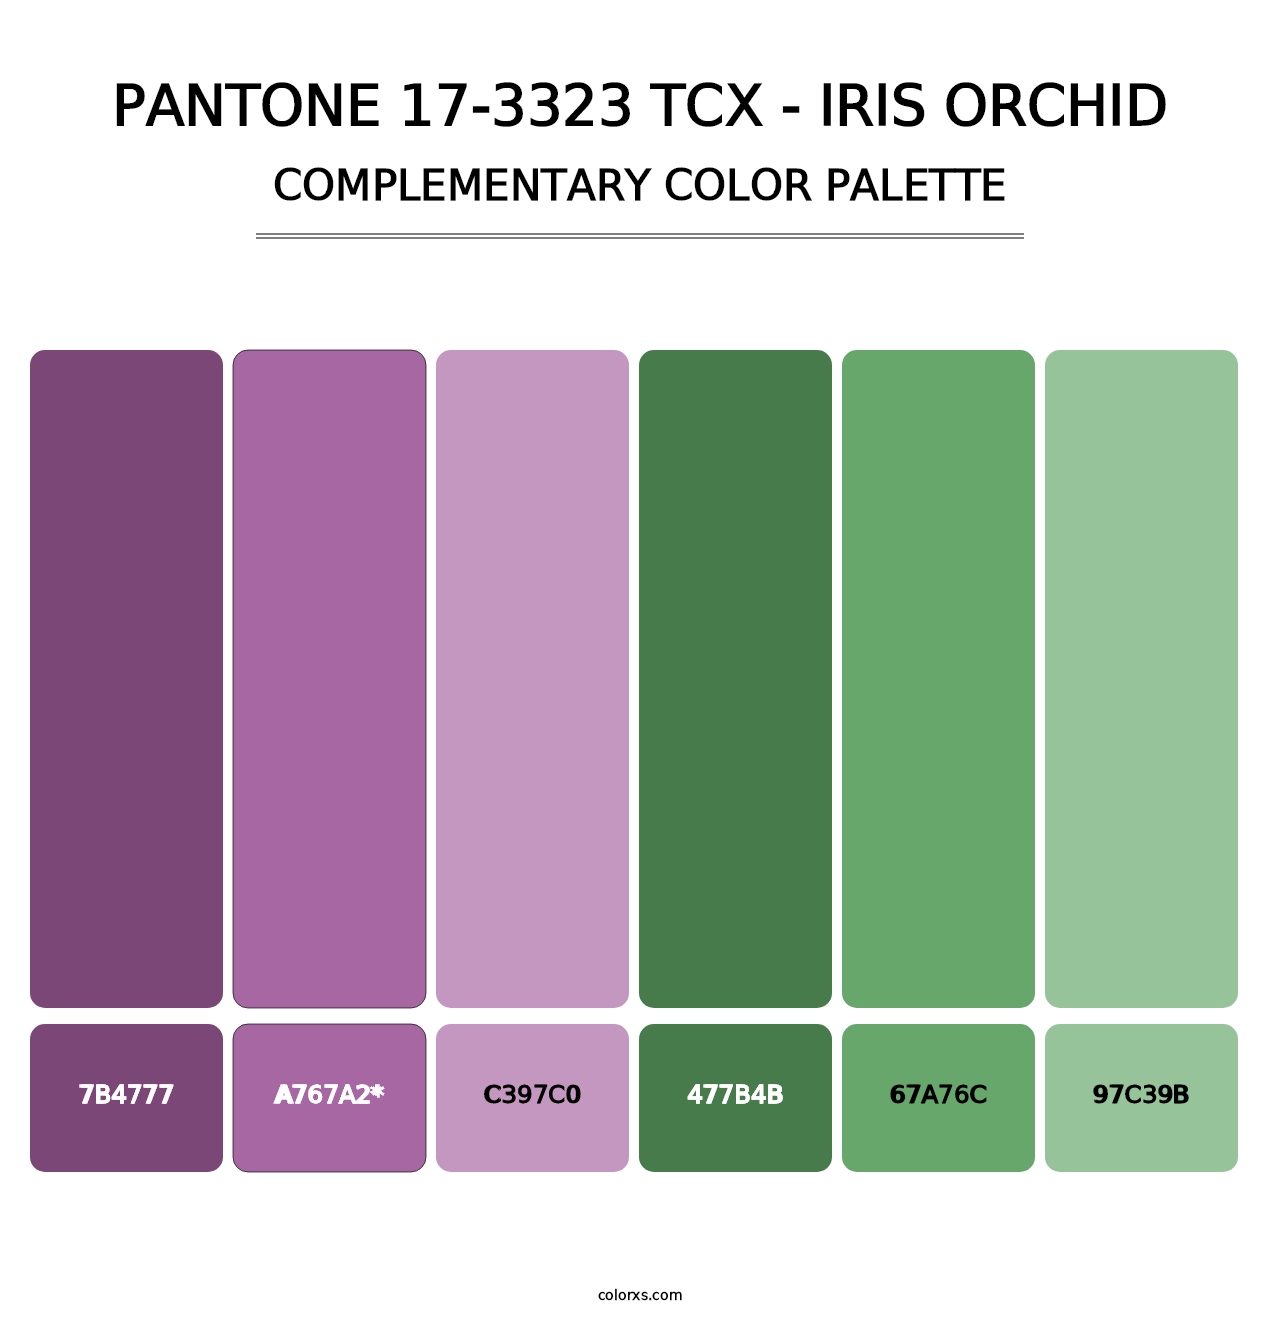 PANTONE 17-3323 TCX - Iris Orchid - Complementary Color Palette